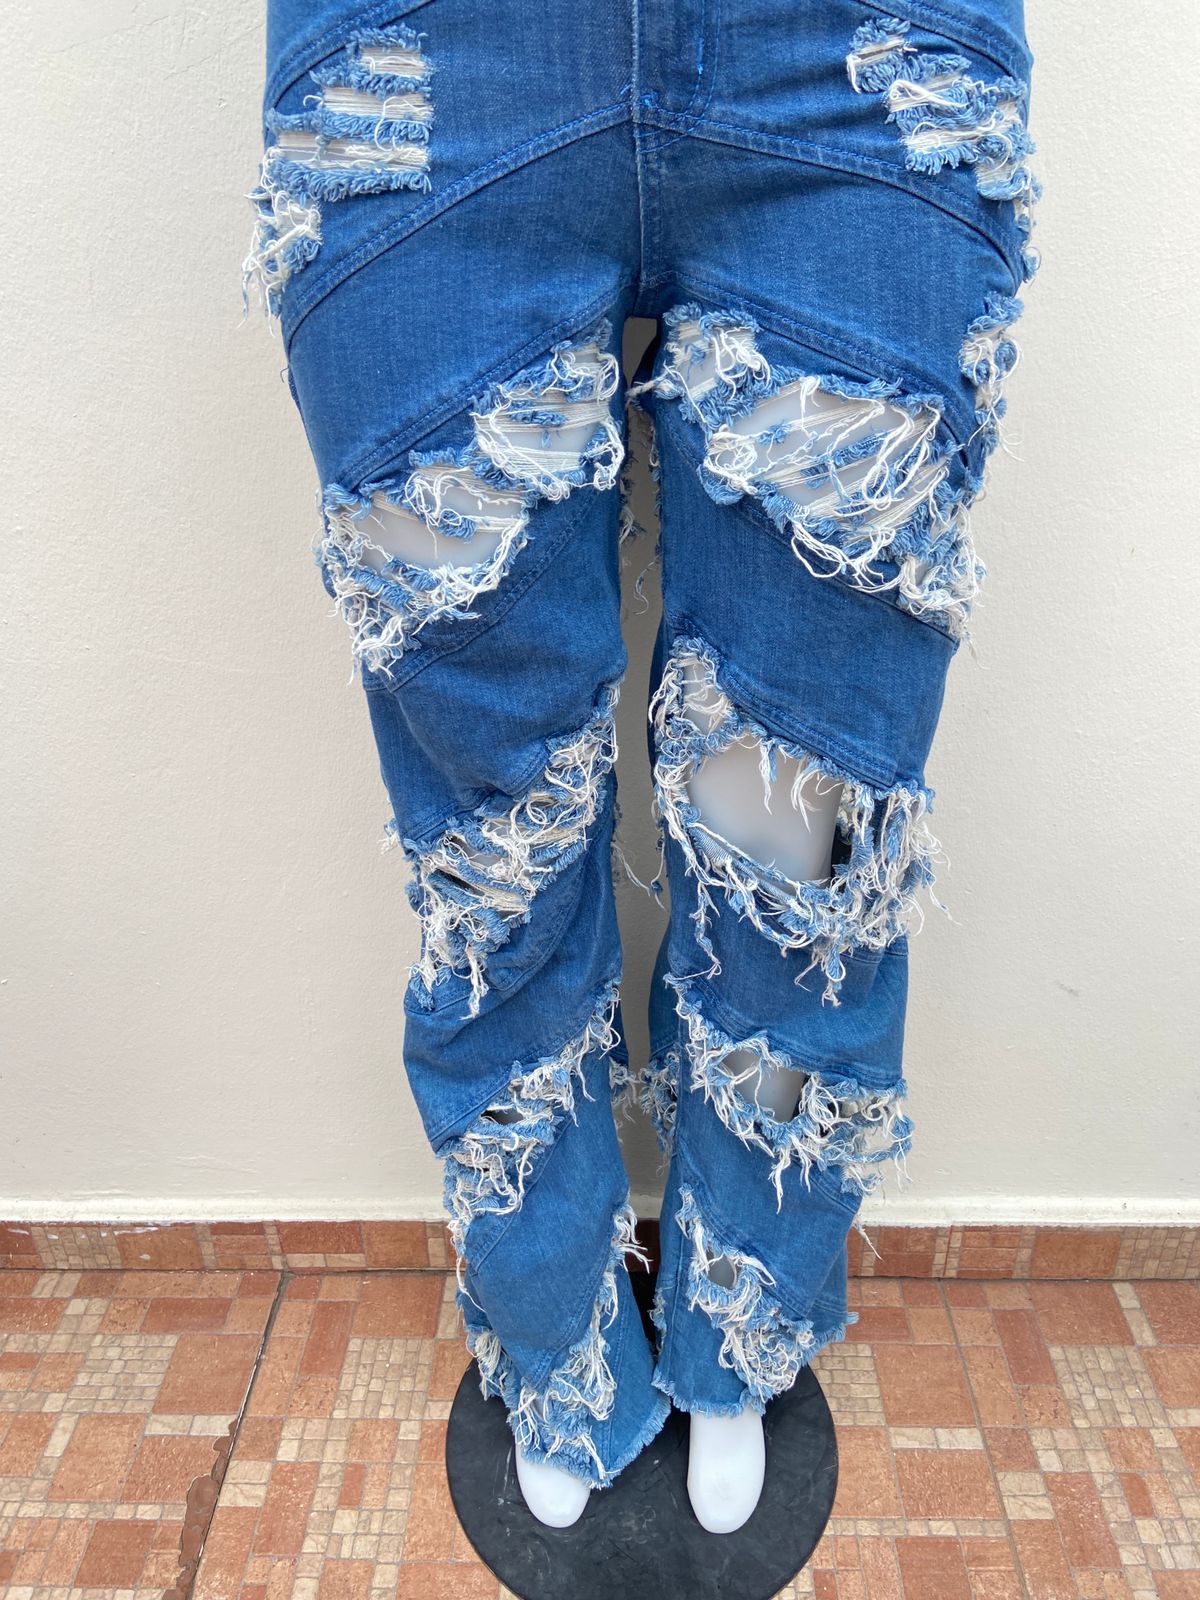 Pantalón Fashion Nova original color azul con varios rasgados.